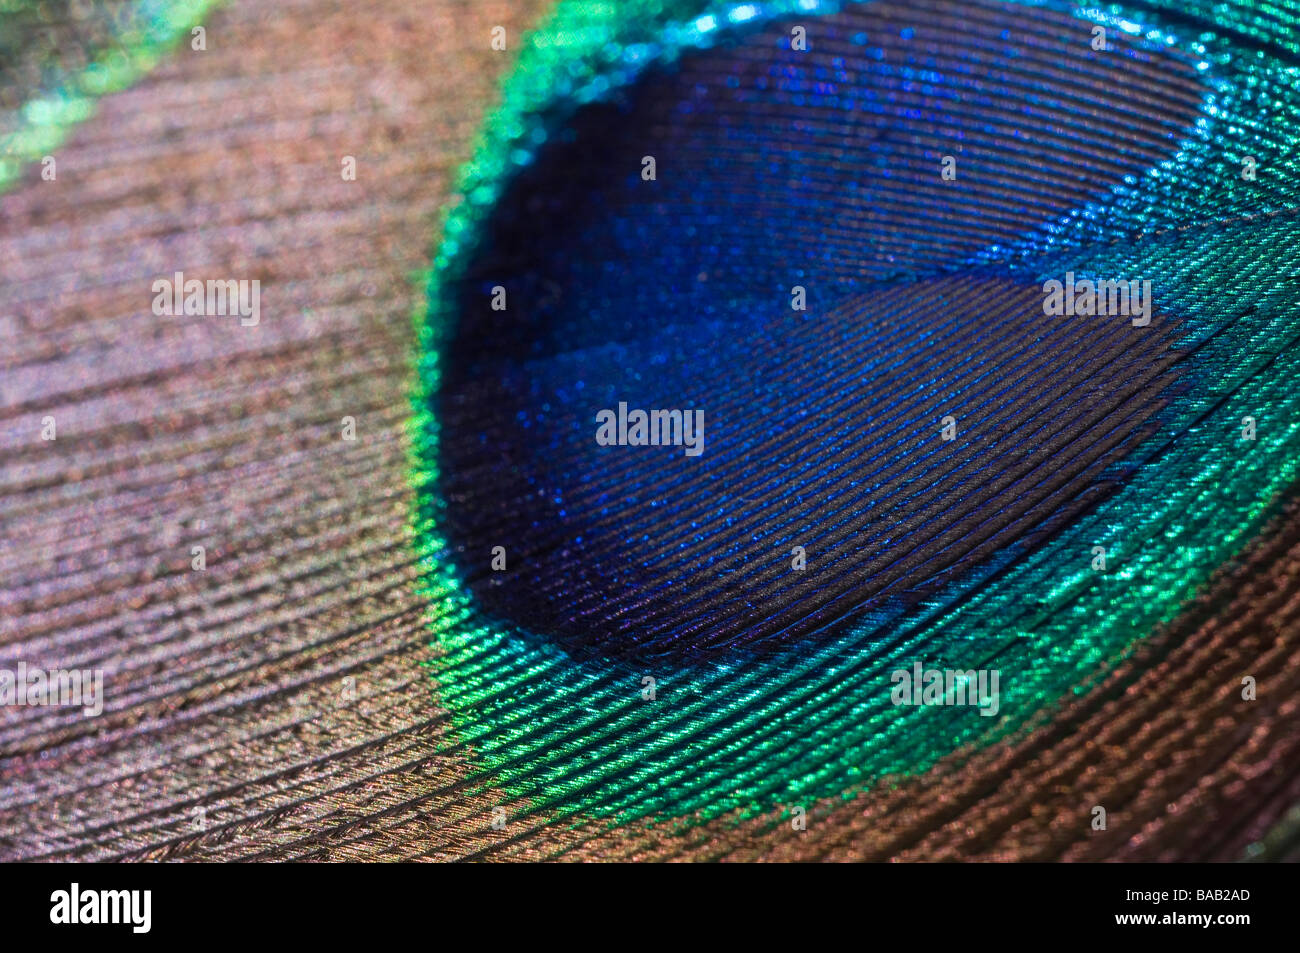 Closeup of a Peacock feather eye Stock Photo